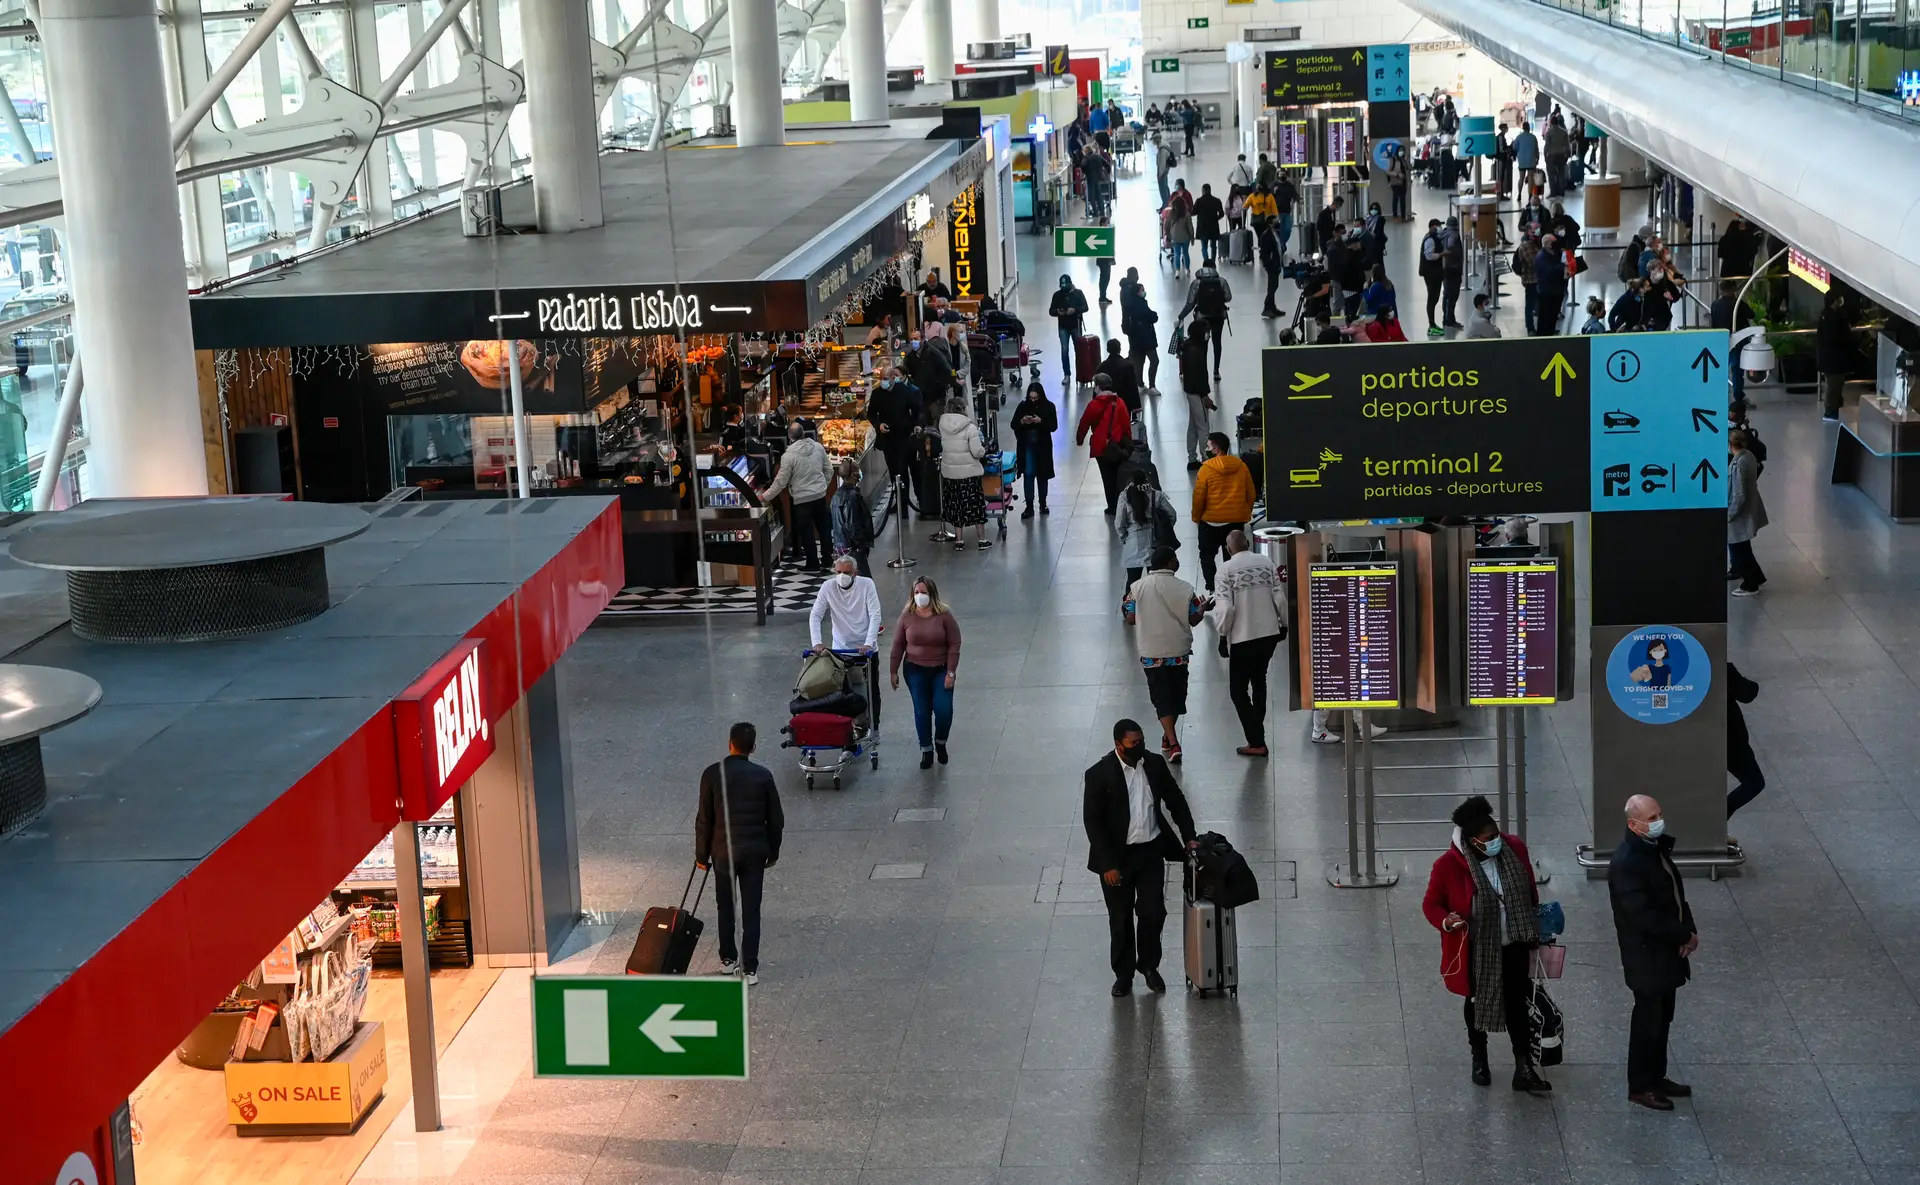 Taxa de segurança nos aeroportos portugueses aumenta 20%